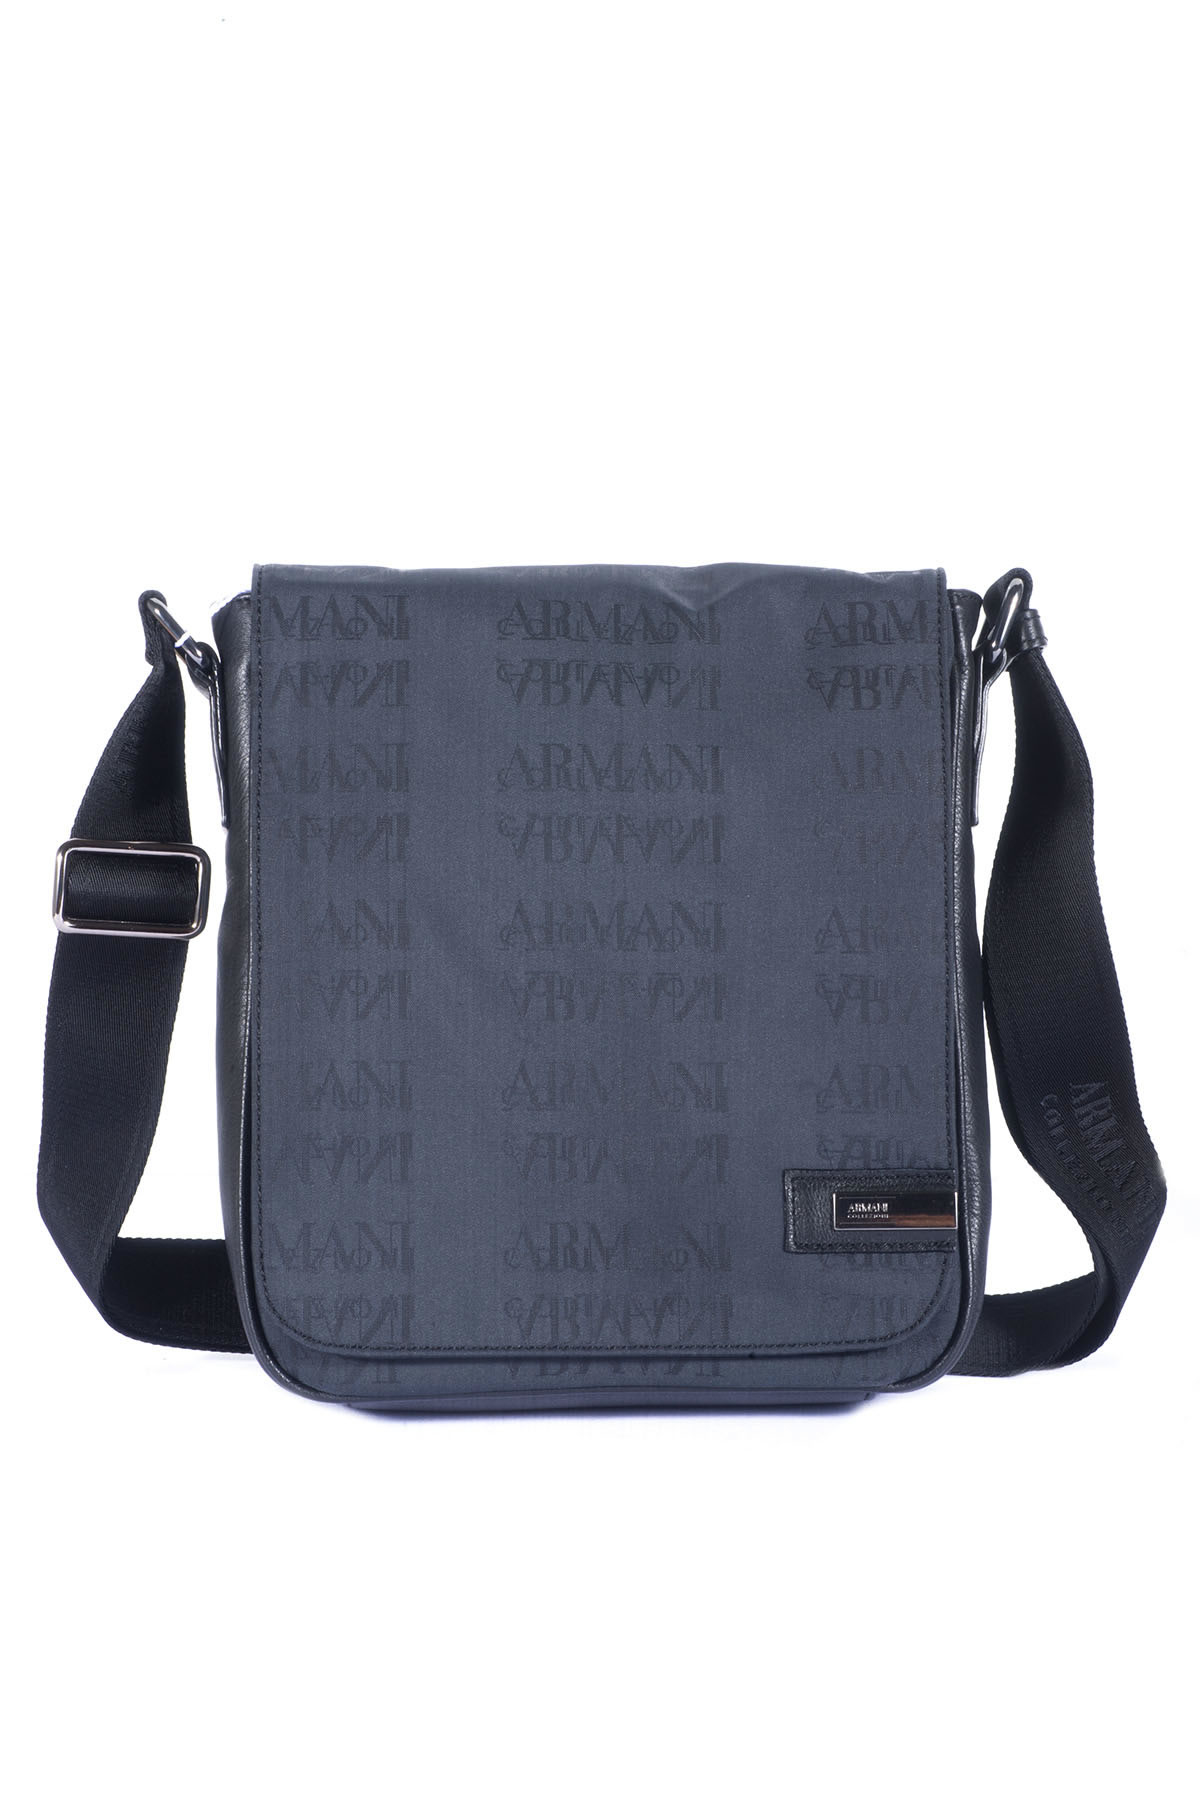 Armani Shoulder Bag in Black for Men | Lyst